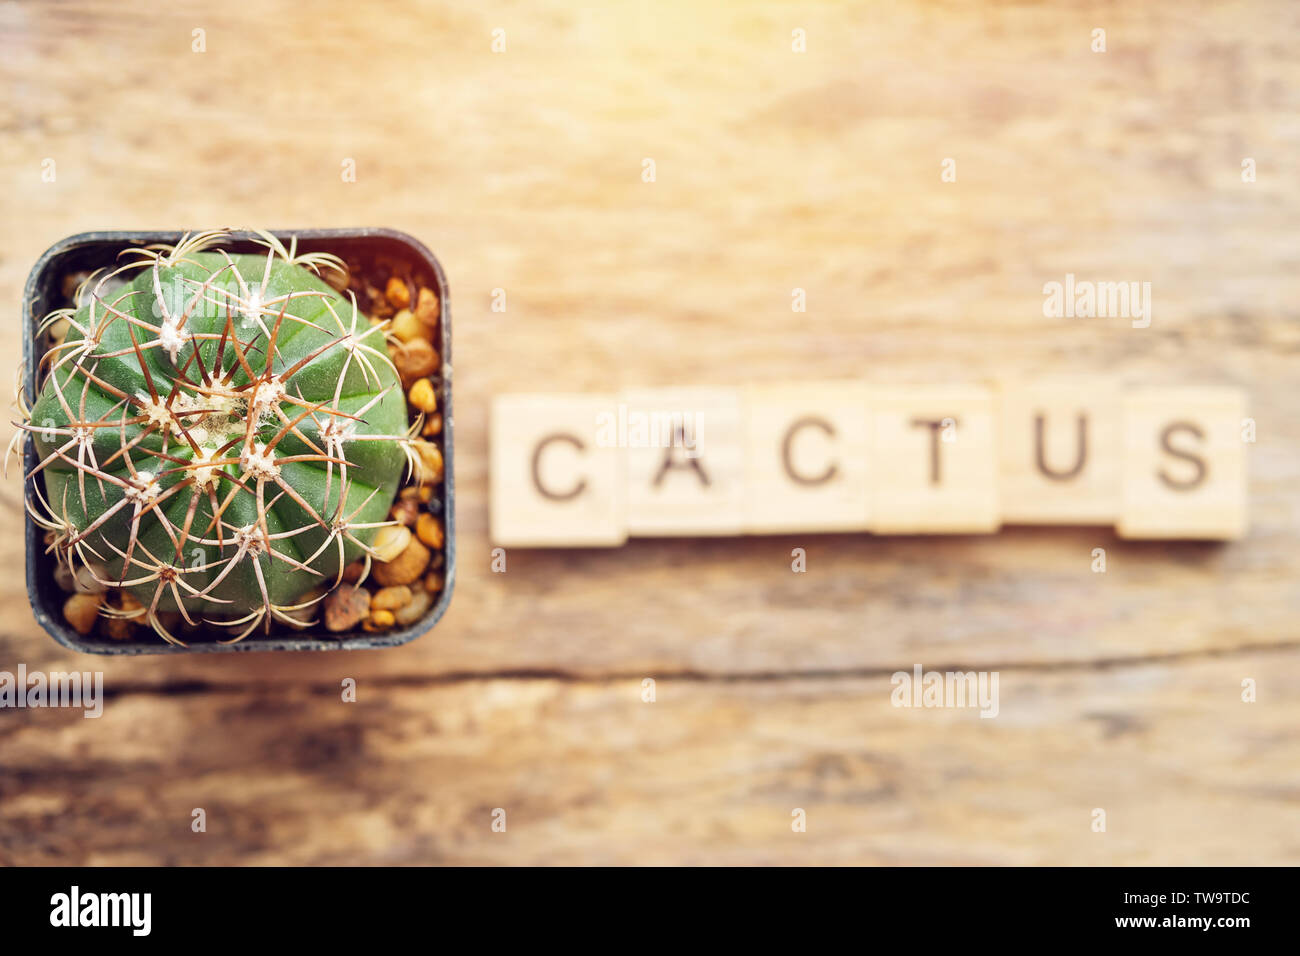 Impianto di cactus in una pentola con il testo cactus dal blocco di legno Foto Stock